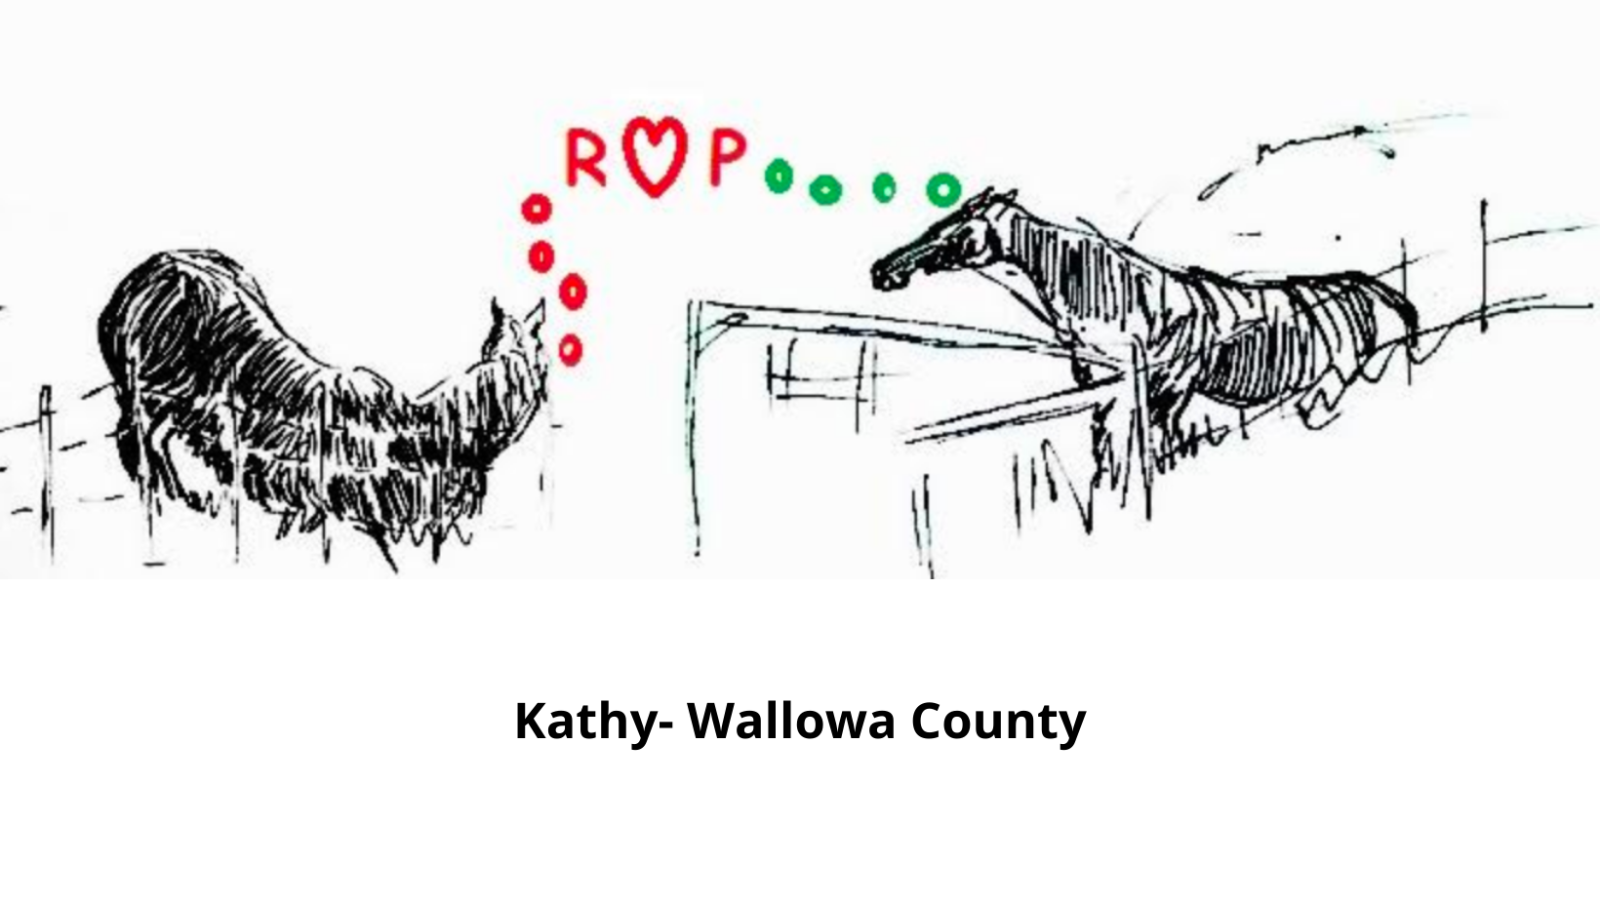 رسم لخيلين من كاثي في مقاطعة والوا ، مع الأحرف ROP ، حيث الحرف "O" هو شكل قلب